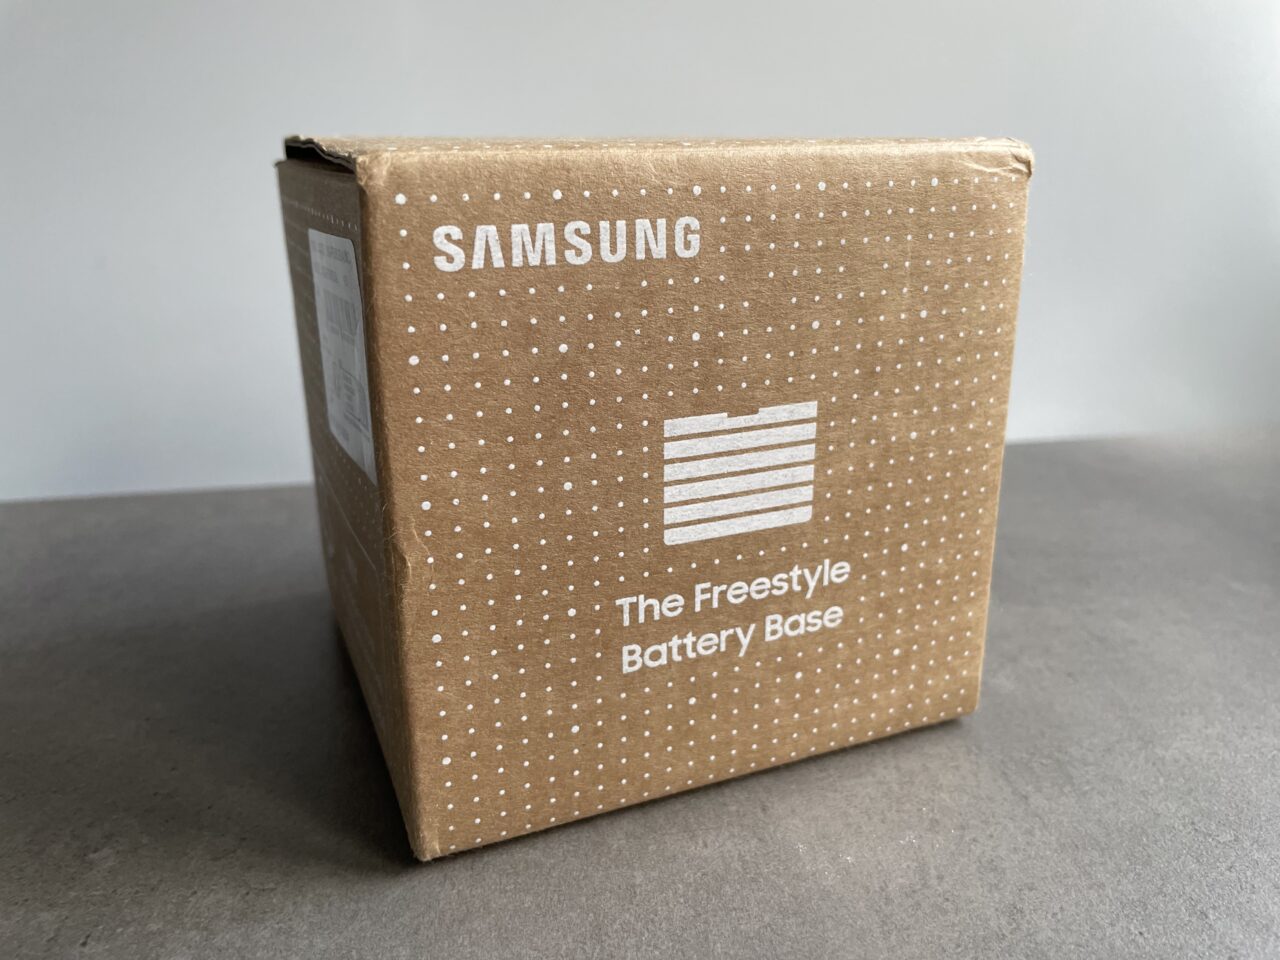 Brązowe kartonowe opakowanie z napisem "SAMSUNG The Freestyle Battery Base" stoi na szarym tle.